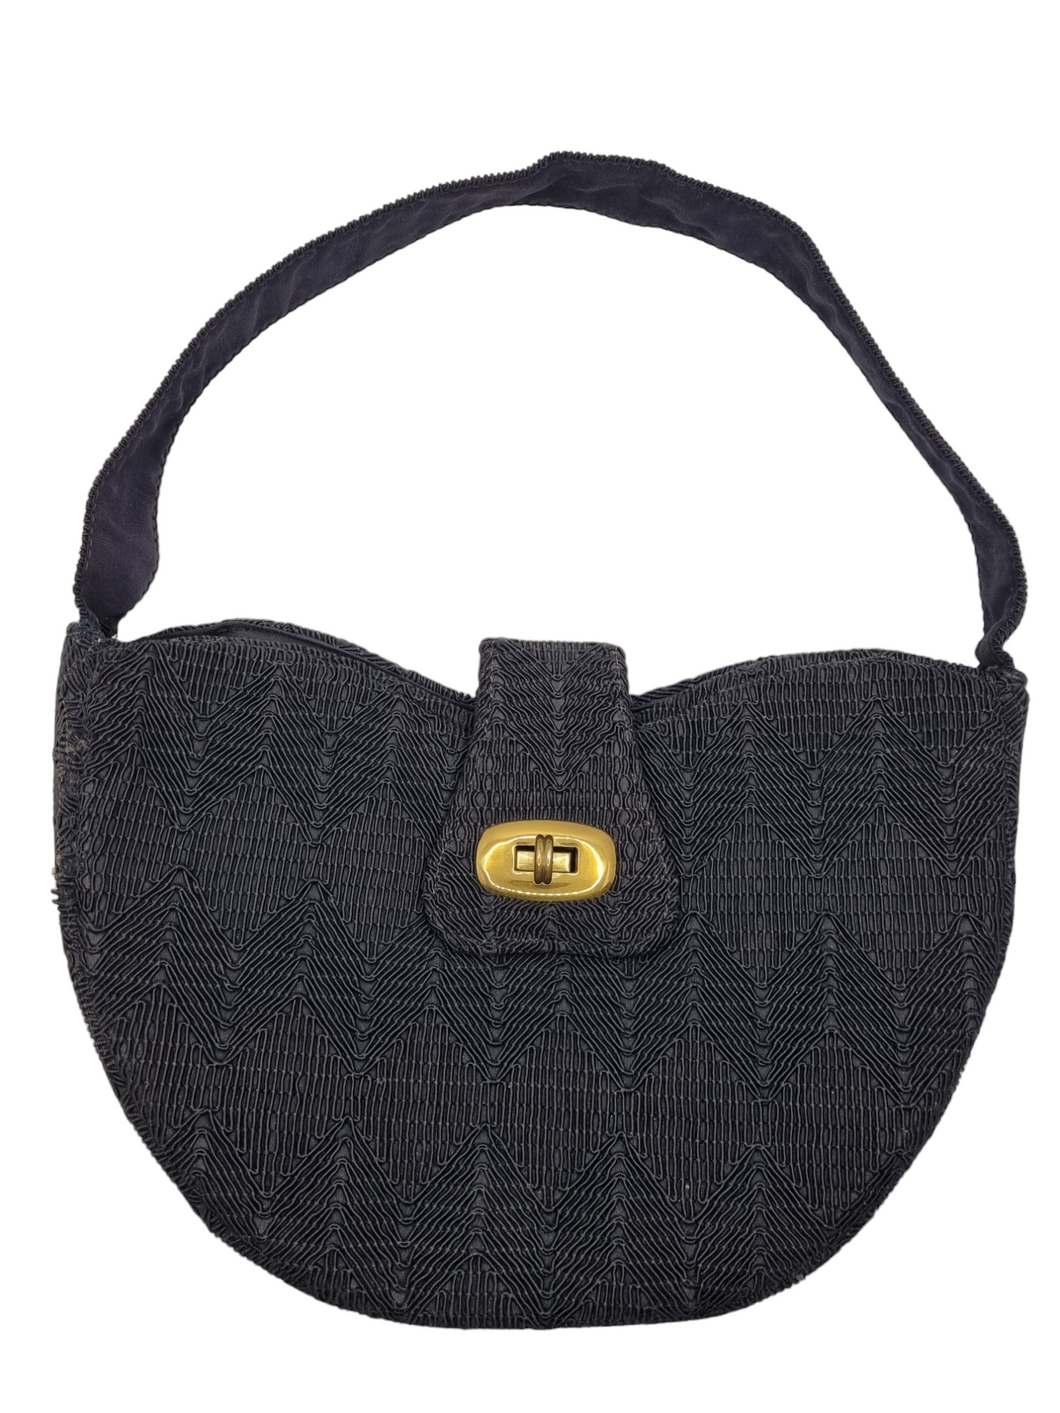 1940s Black Heart Shaped Corde Bag